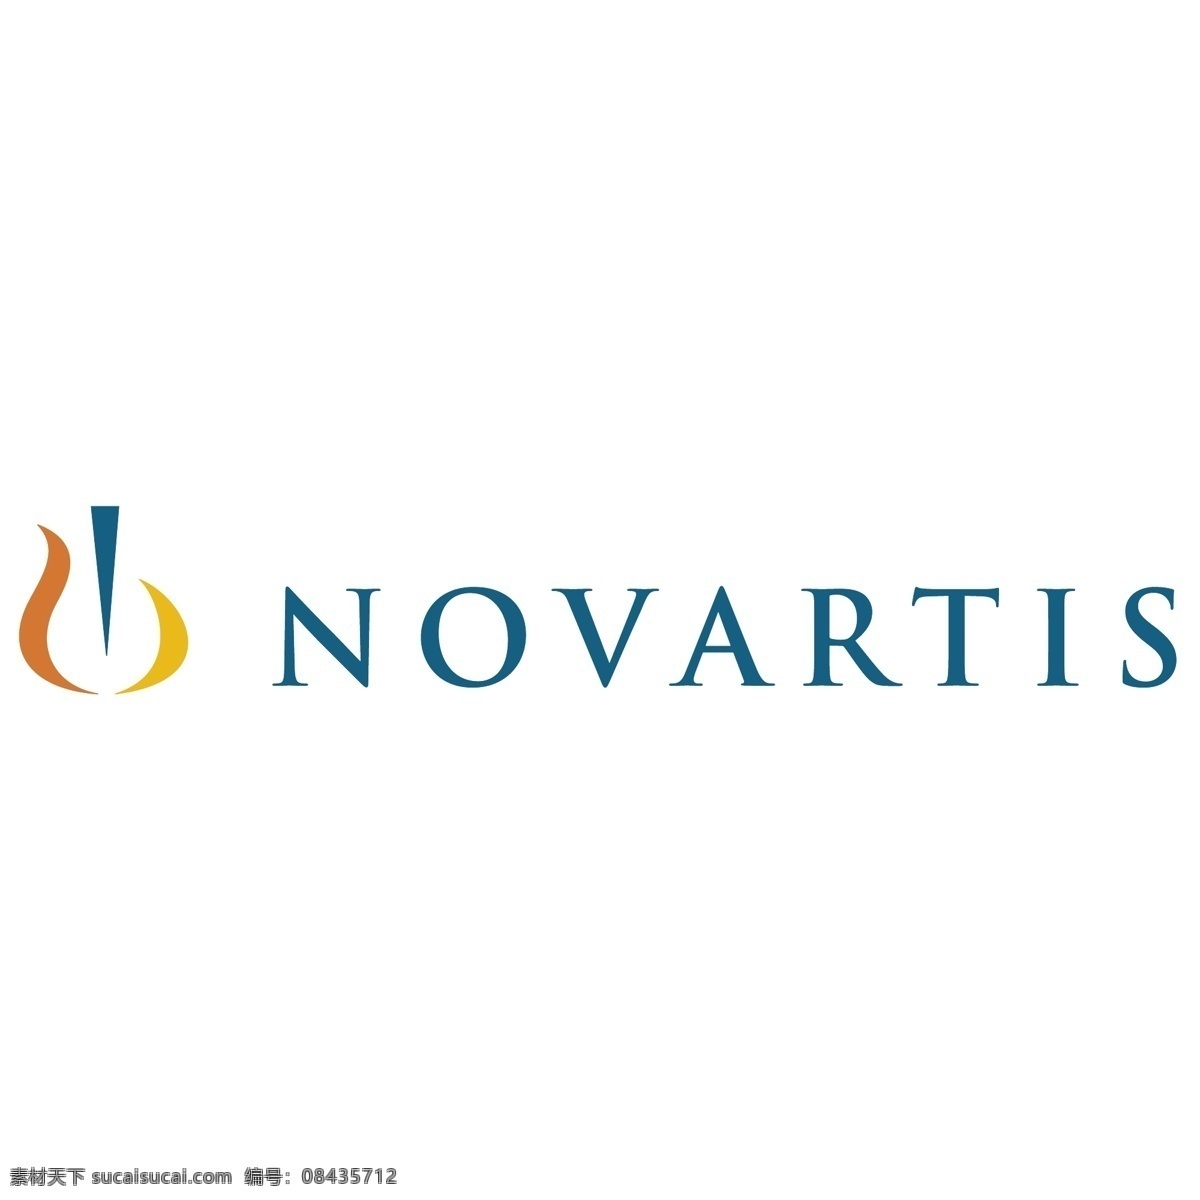 诺华制药标志 novartis 标志 制药标志 eps格式 诺华制药 医药 医疗 logo 标志设计 矢量标志 标识 图标 设计素材 矢量图 矢量素材 标志矢量 标志图标 企业